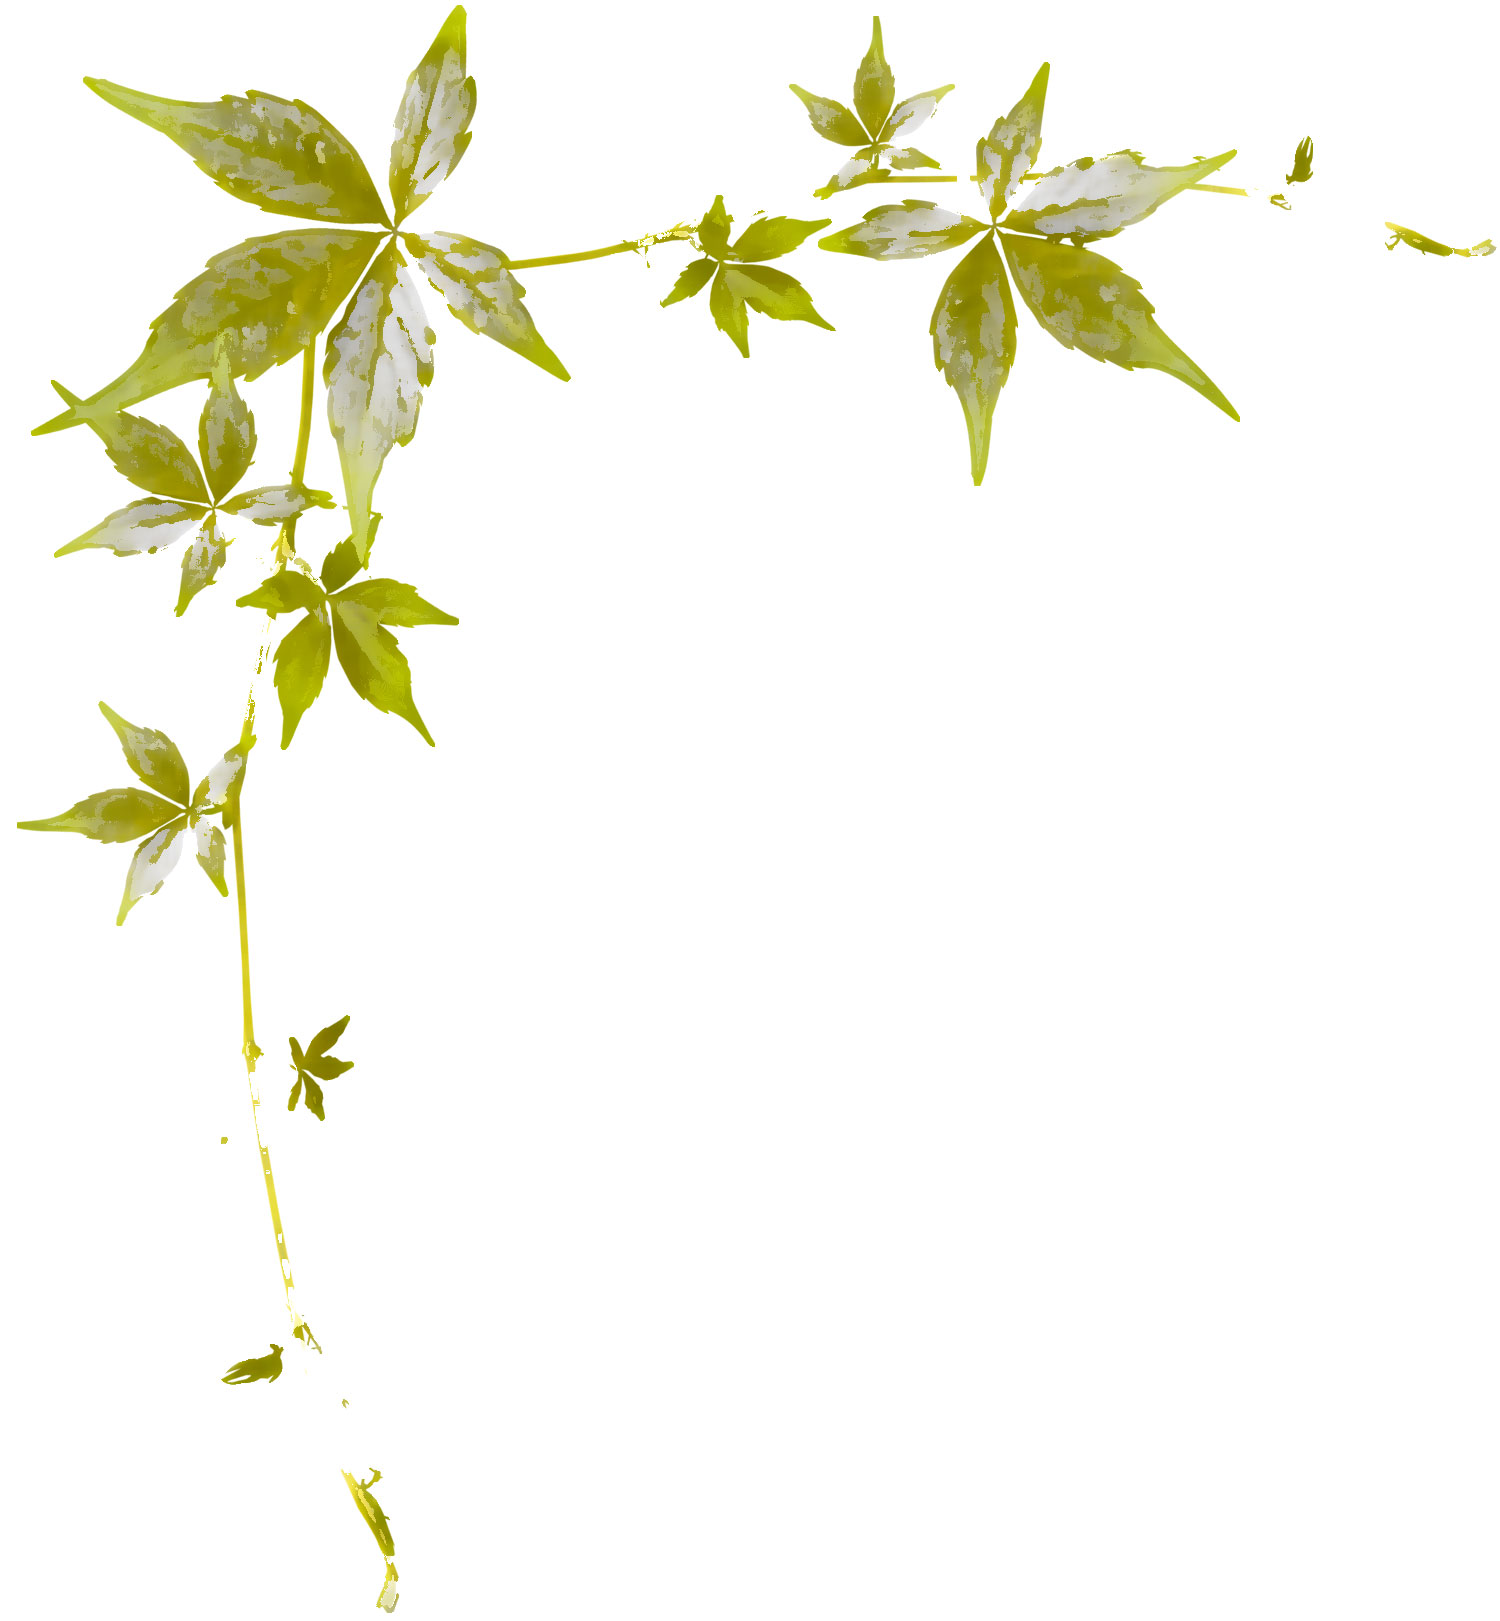 葉っぱや草木のイラスト 画像 フリー素材 No 290 茎葉 緑